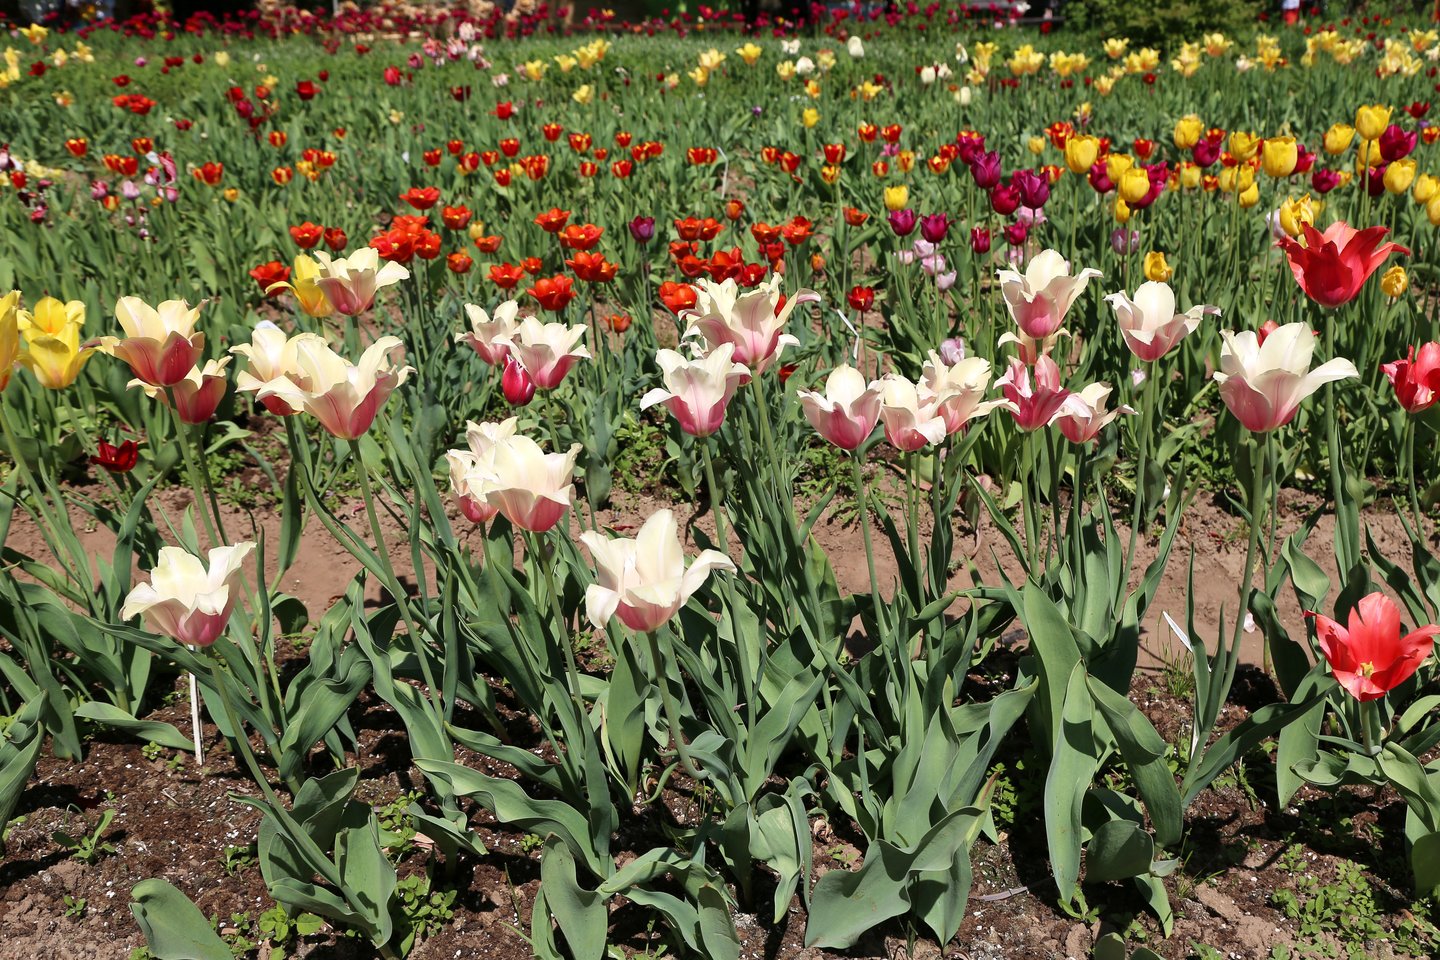  Burbiškio dvare žydi apie 400 rūšių tulpių. <br> R.Vitkaus nuotr.